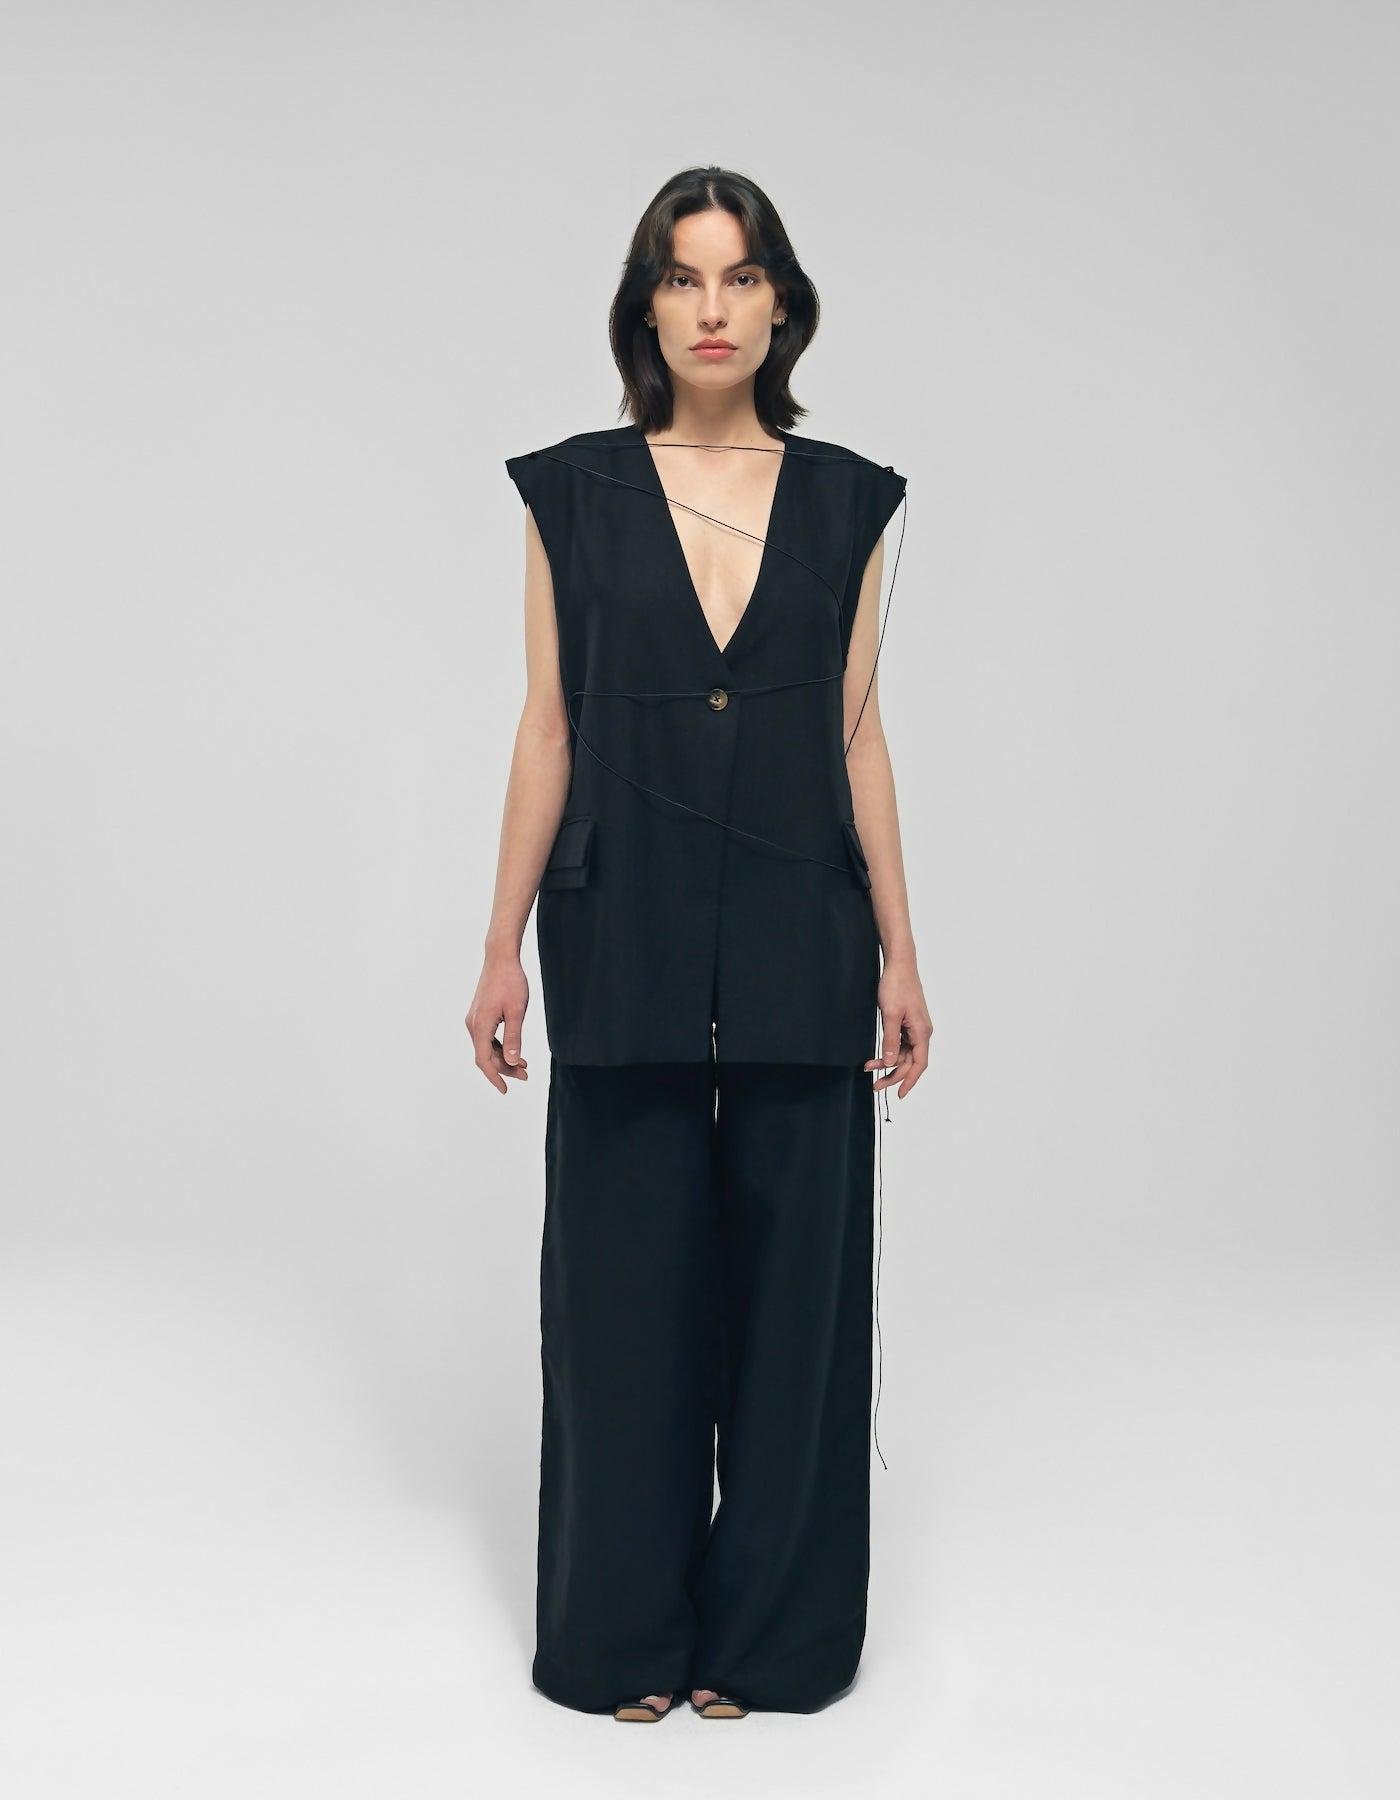 Meilani Black Linen Suit by MAET STUDIO